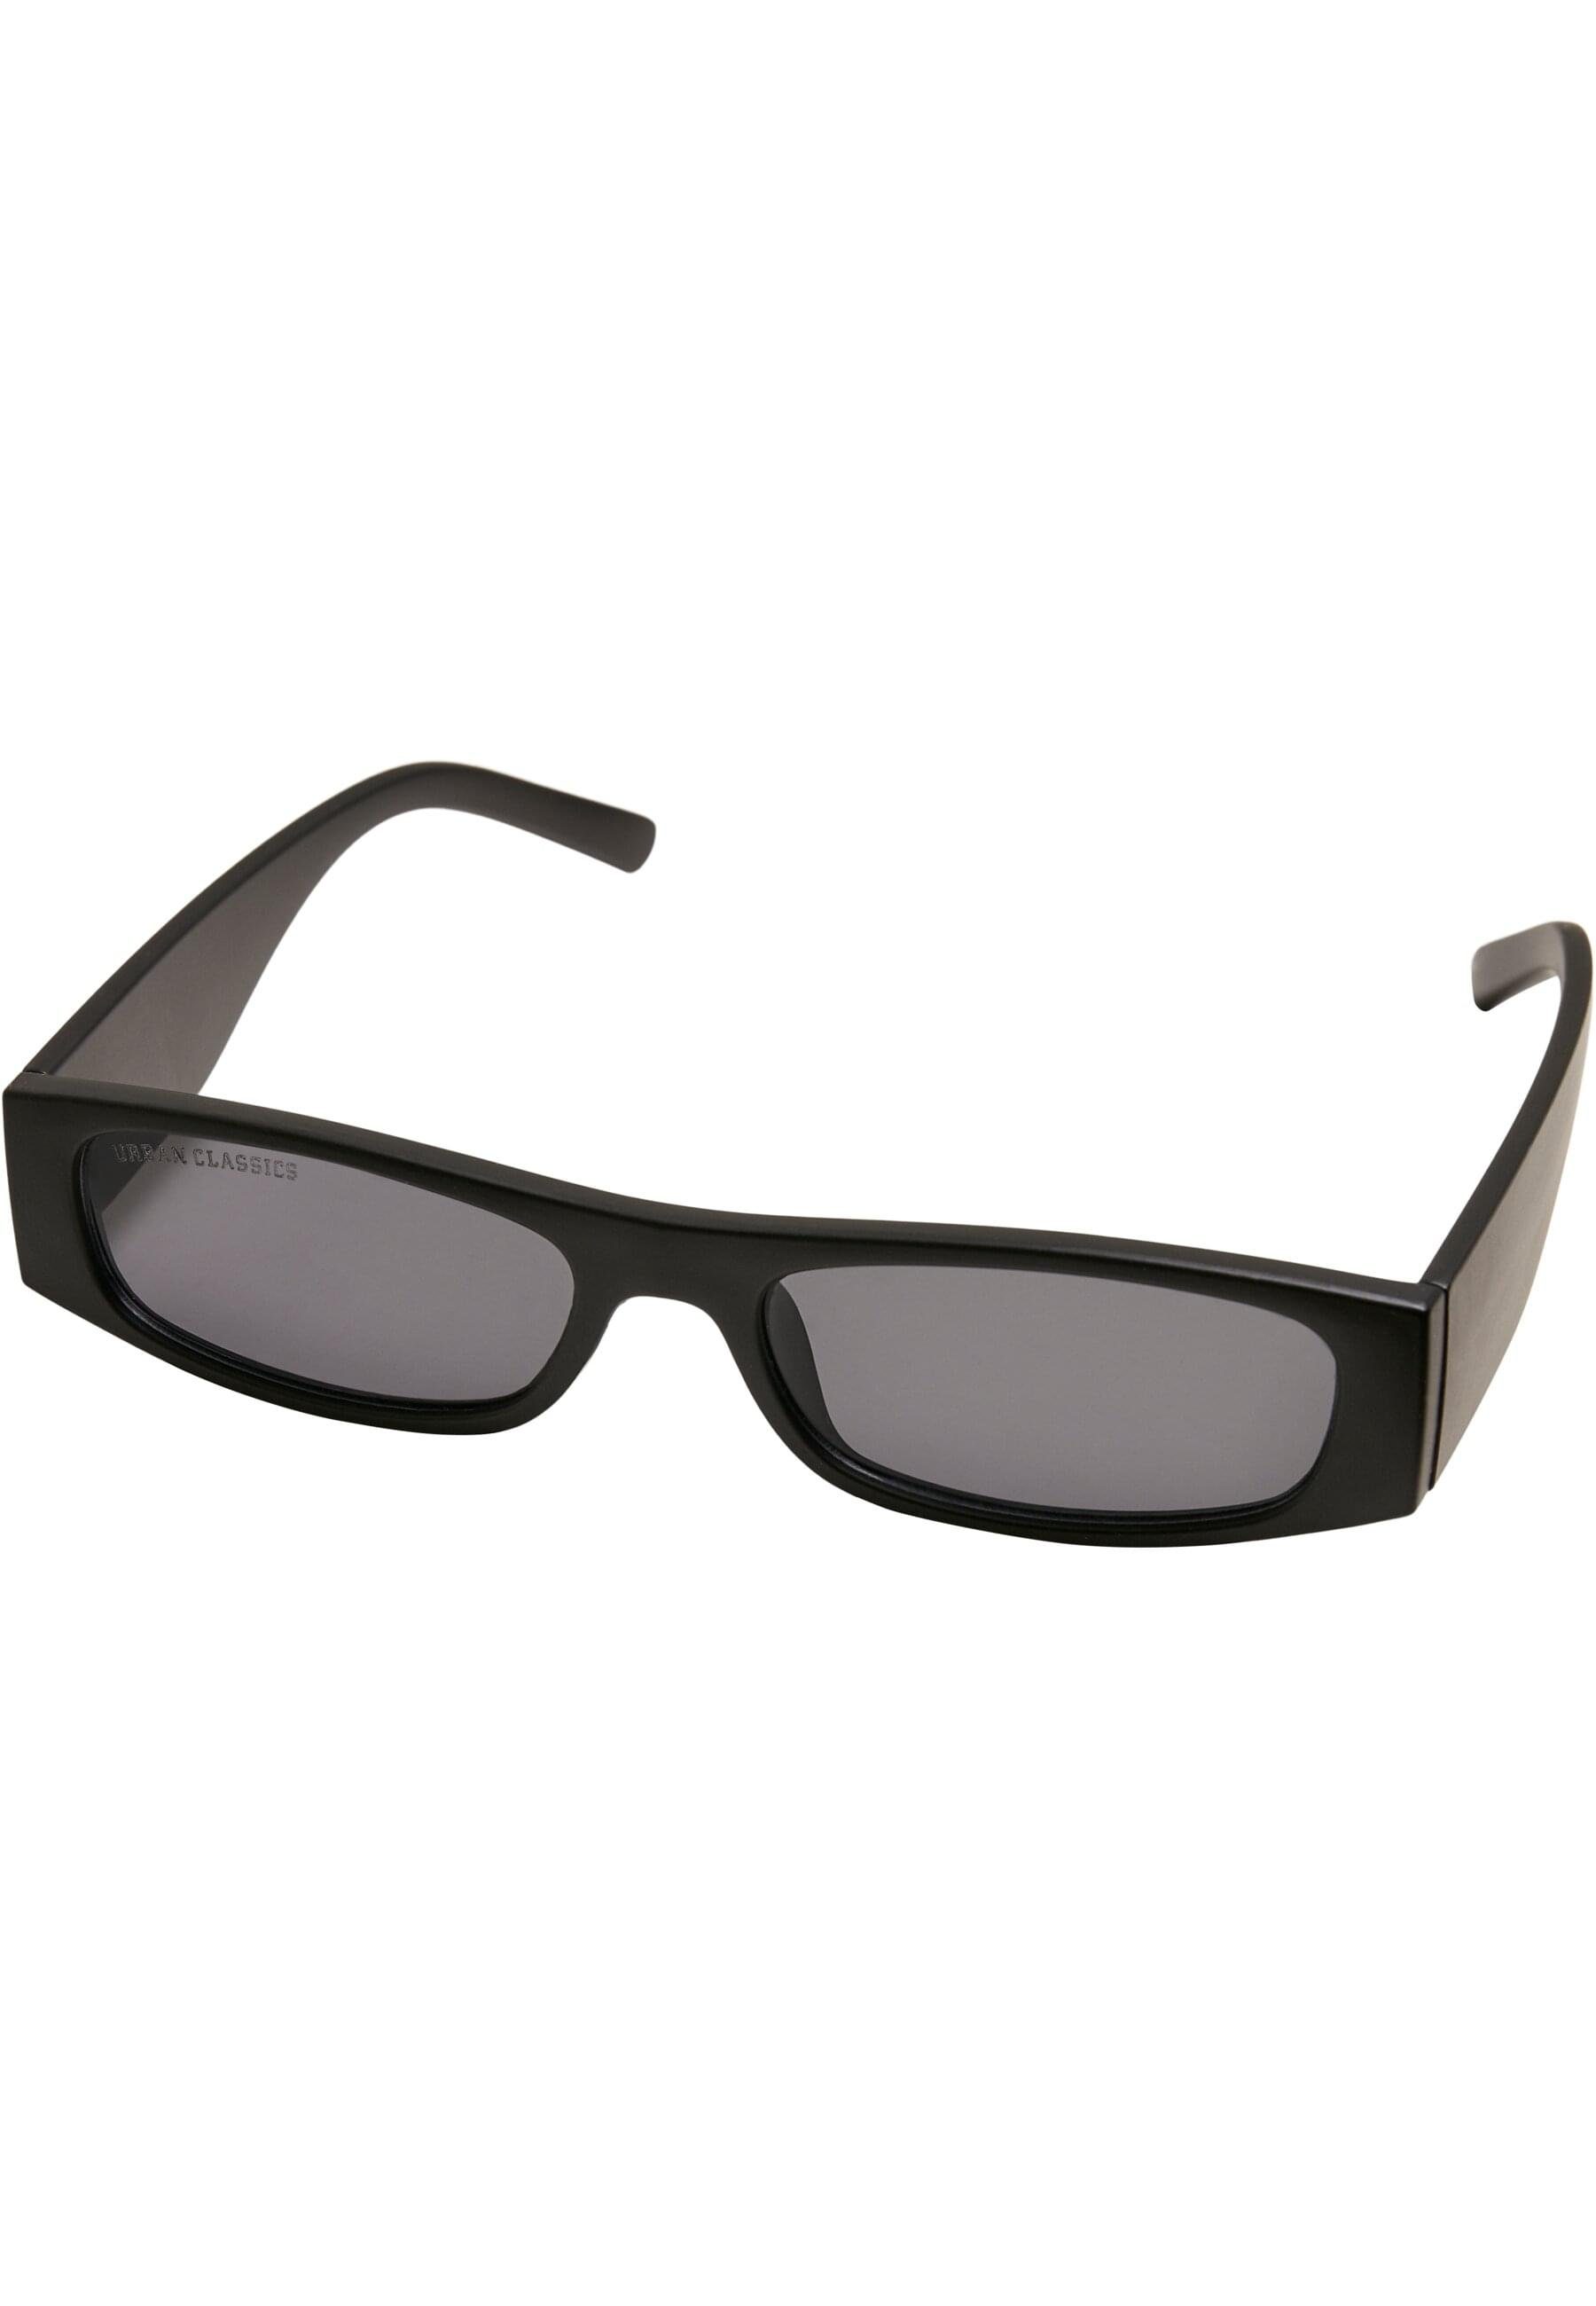 Sunglasses CLASSICS Sonnenbrille URBAN Unisex Teressa